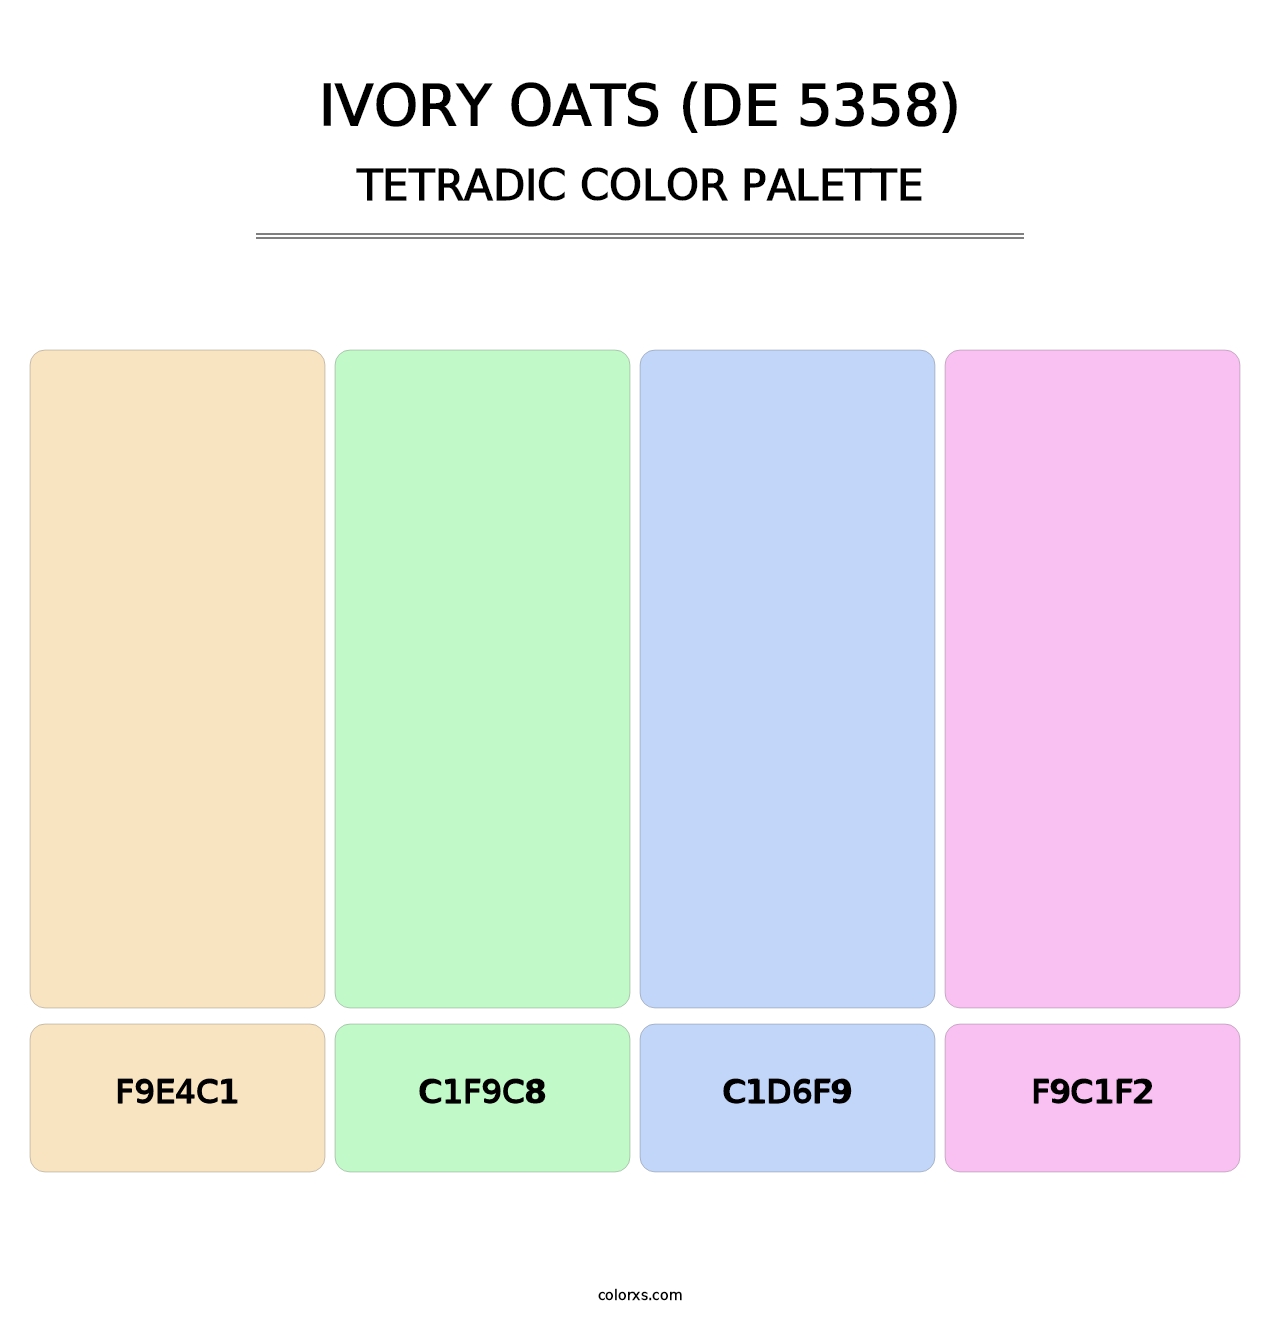 Ivory Oats (DE 5358) - Tetradic Color Palette